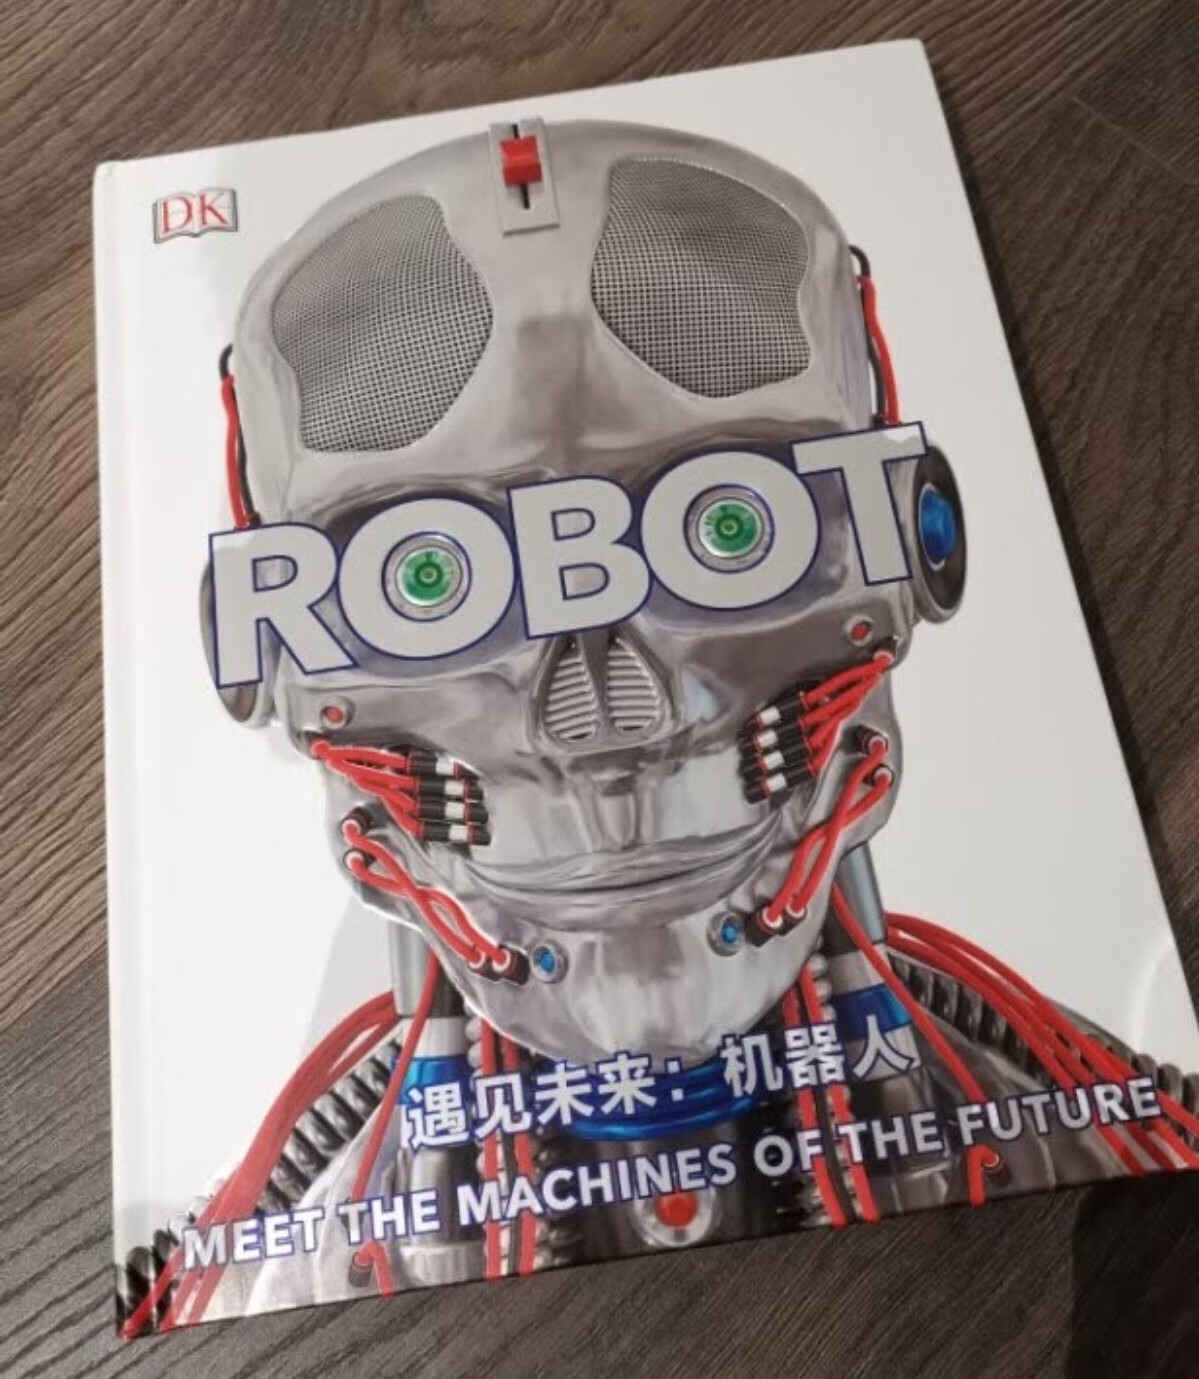 本书介绍了86机器人，介绍了每款机器人的产地、大小、动力来源、制造商，以及它个性的功能。还解释机器人是怎么工作的，又是怎么被制造出来的，并介绍了科学、技术、机械工程和计算的前沿知识。本书还含有23个专题，在介绍具体机器人的同时，带我们学习通用的机器人知识和相关技术的发展历史。比如机器人有哪些类型，机器人是怎样构建地图的，机器人是怎样处理数据的，机器人有哪些移动方式，现实中工程师是怎么给机器人编程的……书中有患有神经肌肉疾病的孩子走路的辅助机器人；帮助医生开展手术的达芬奇手术机器人；可以跟着你走从而解放双手的背包机器人；能制作全球各地美味佳肴的厨师机器人……机器人的发展可以透视出社会的需求。了解现代社会开发的各种机器人，可以让孩子通过自己感兴趣的方式了解社会。